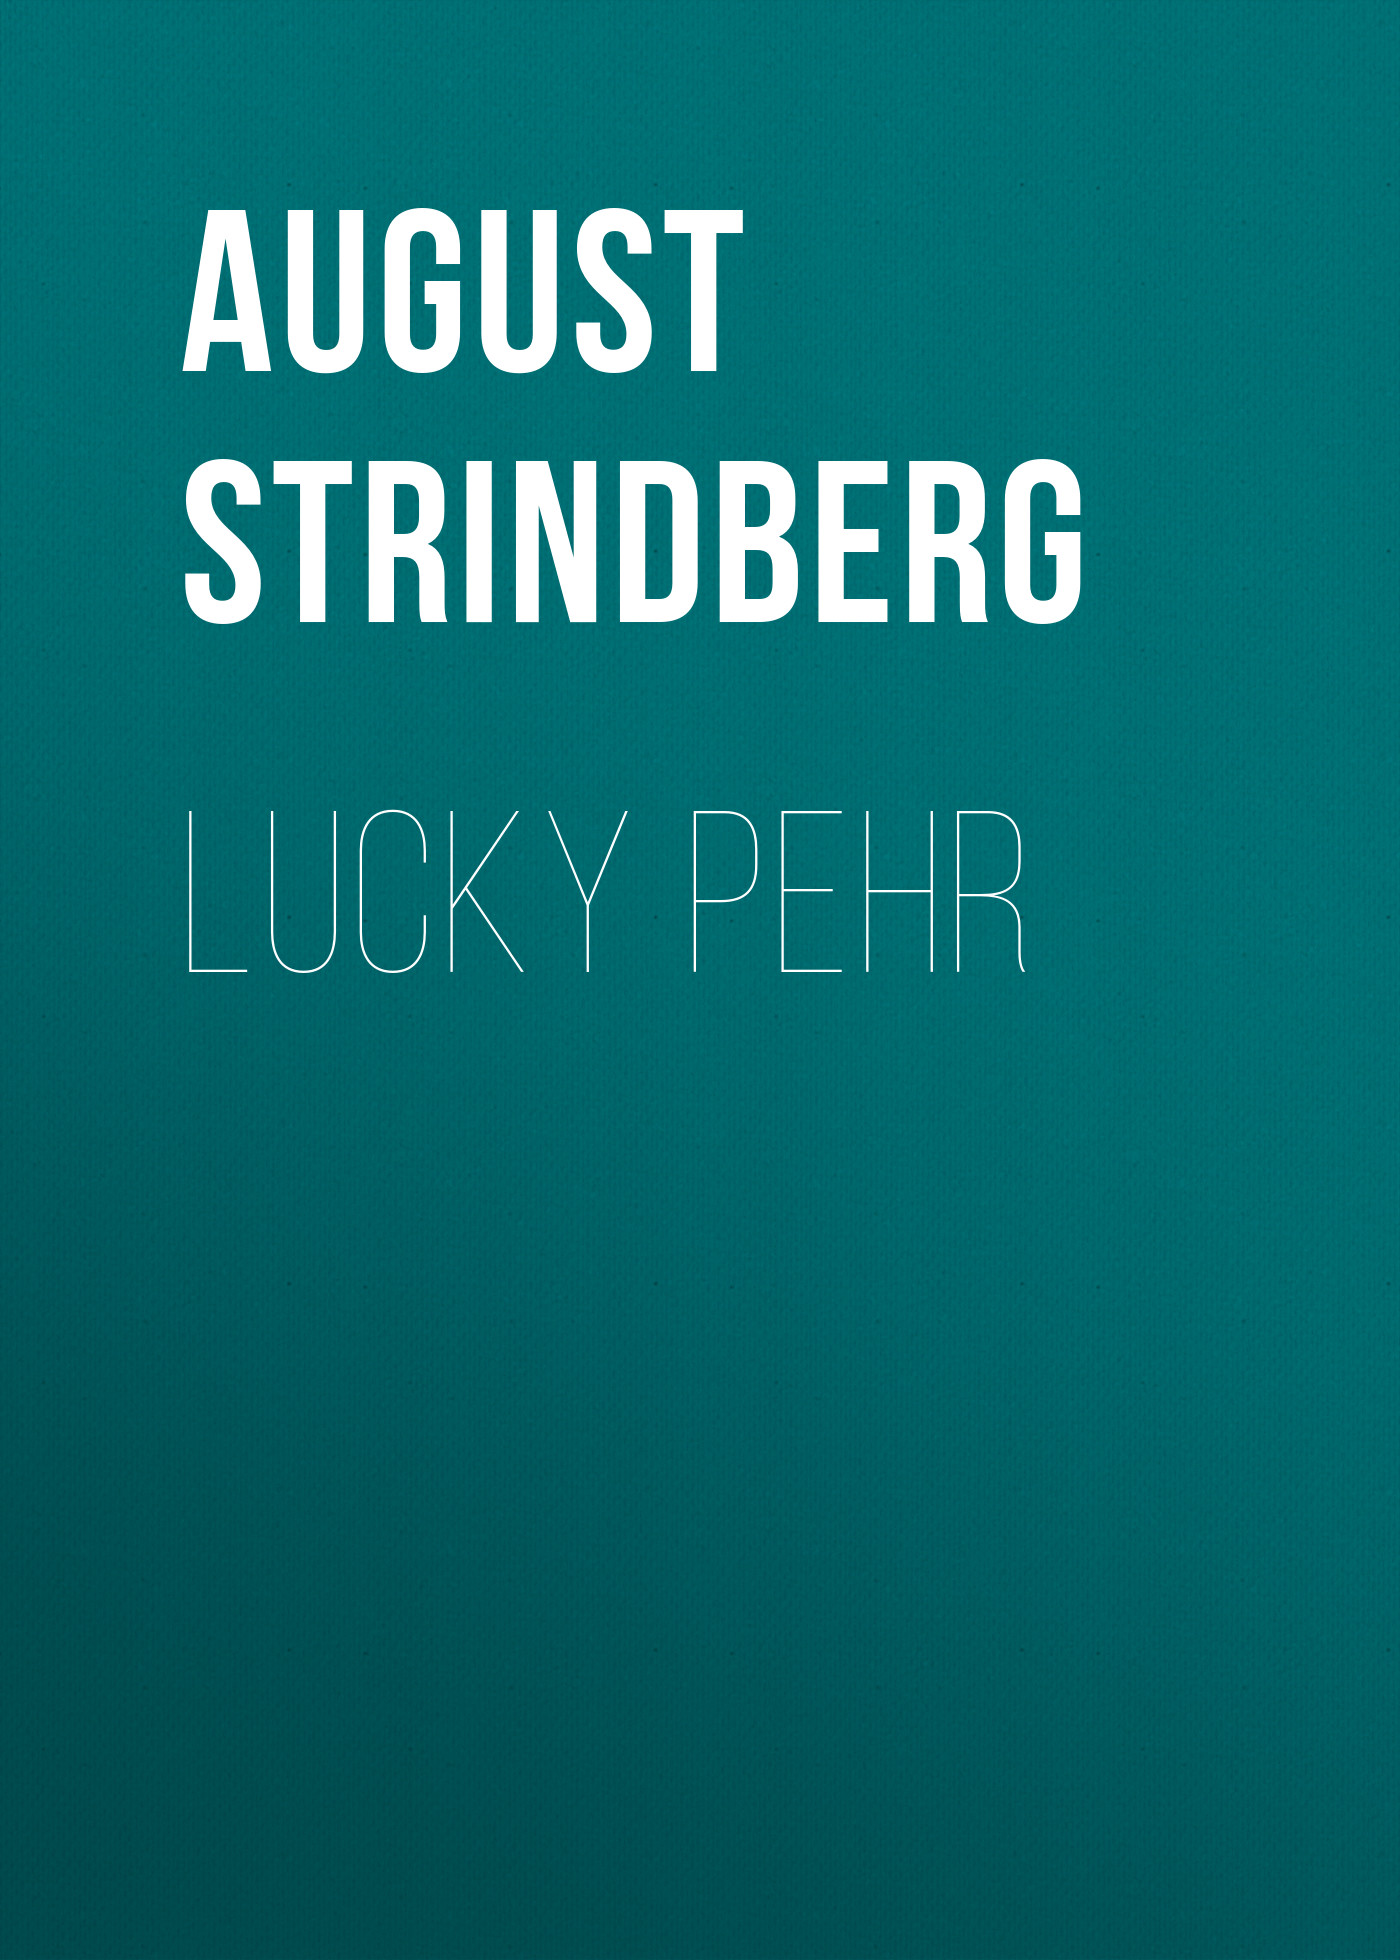 Книга Lucky Pehr из серии , созданная August Strindberg, может относится к жанру Зарубежная драматургия, Драматургия, Зарубежная старинная литература, Зарубежная классика. Стоимость электронной книги Lucky Pehr с идентификатором 36365550 составляет 0 руб.